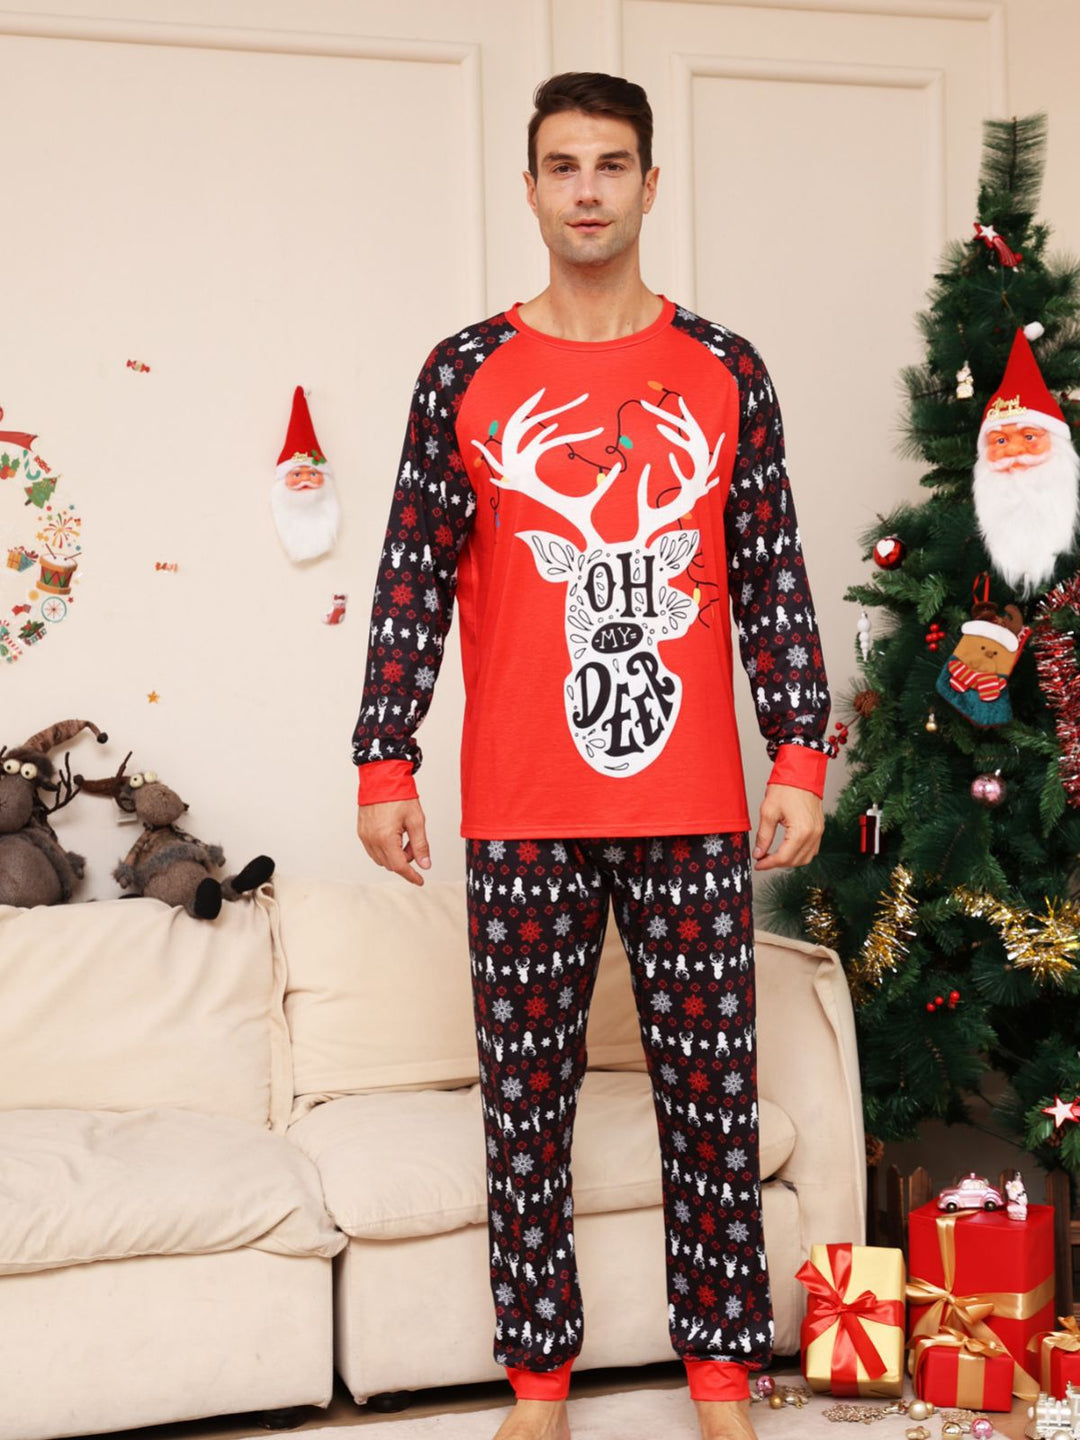 Conjuntos de pijamas a juego familiares con ciervos y nieve navideños rojos (con ropa para perros)